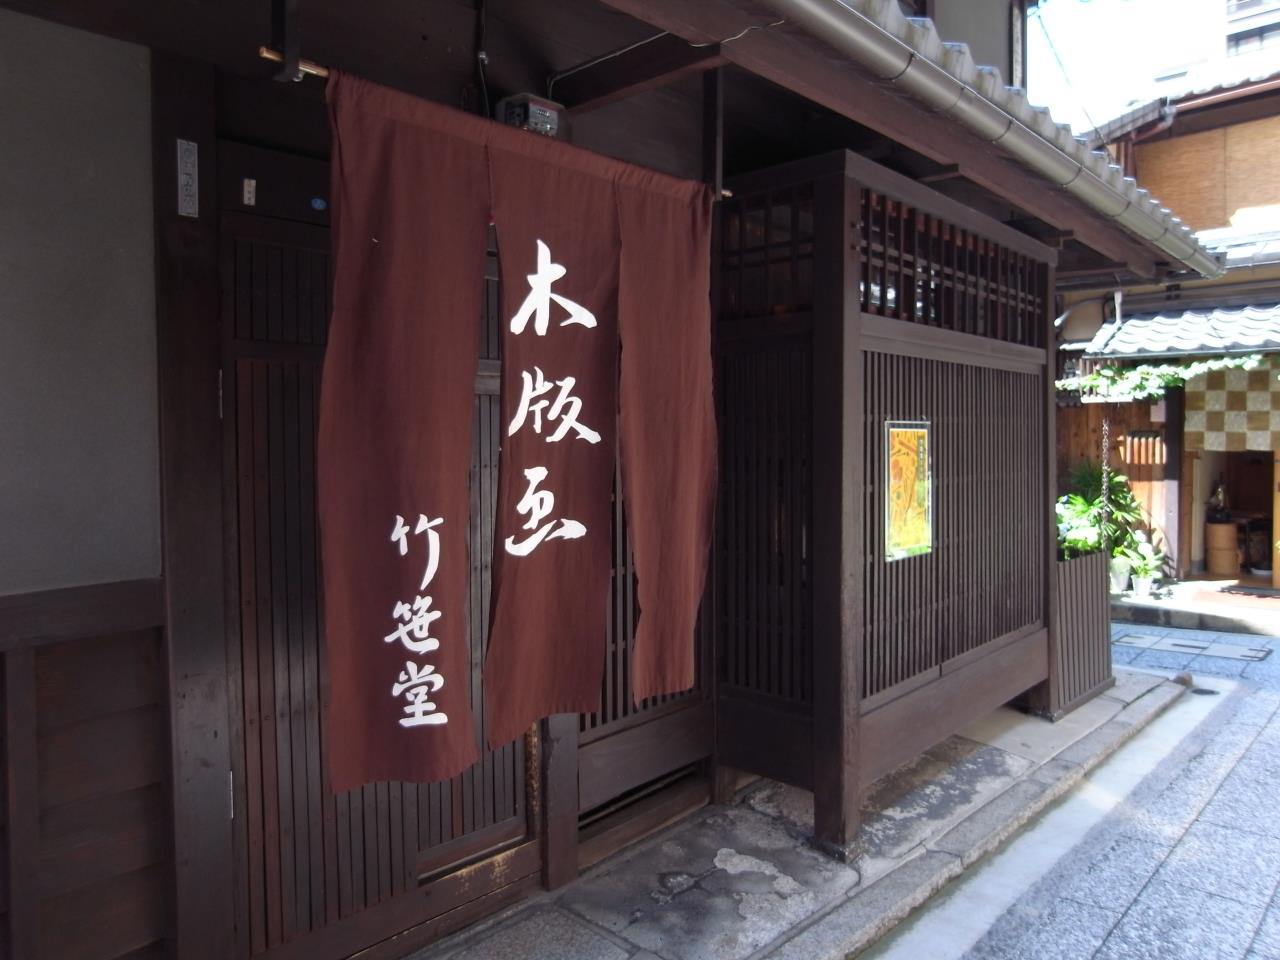 See and experience Ukiyoe, the art of woodblock printing - Takezasado